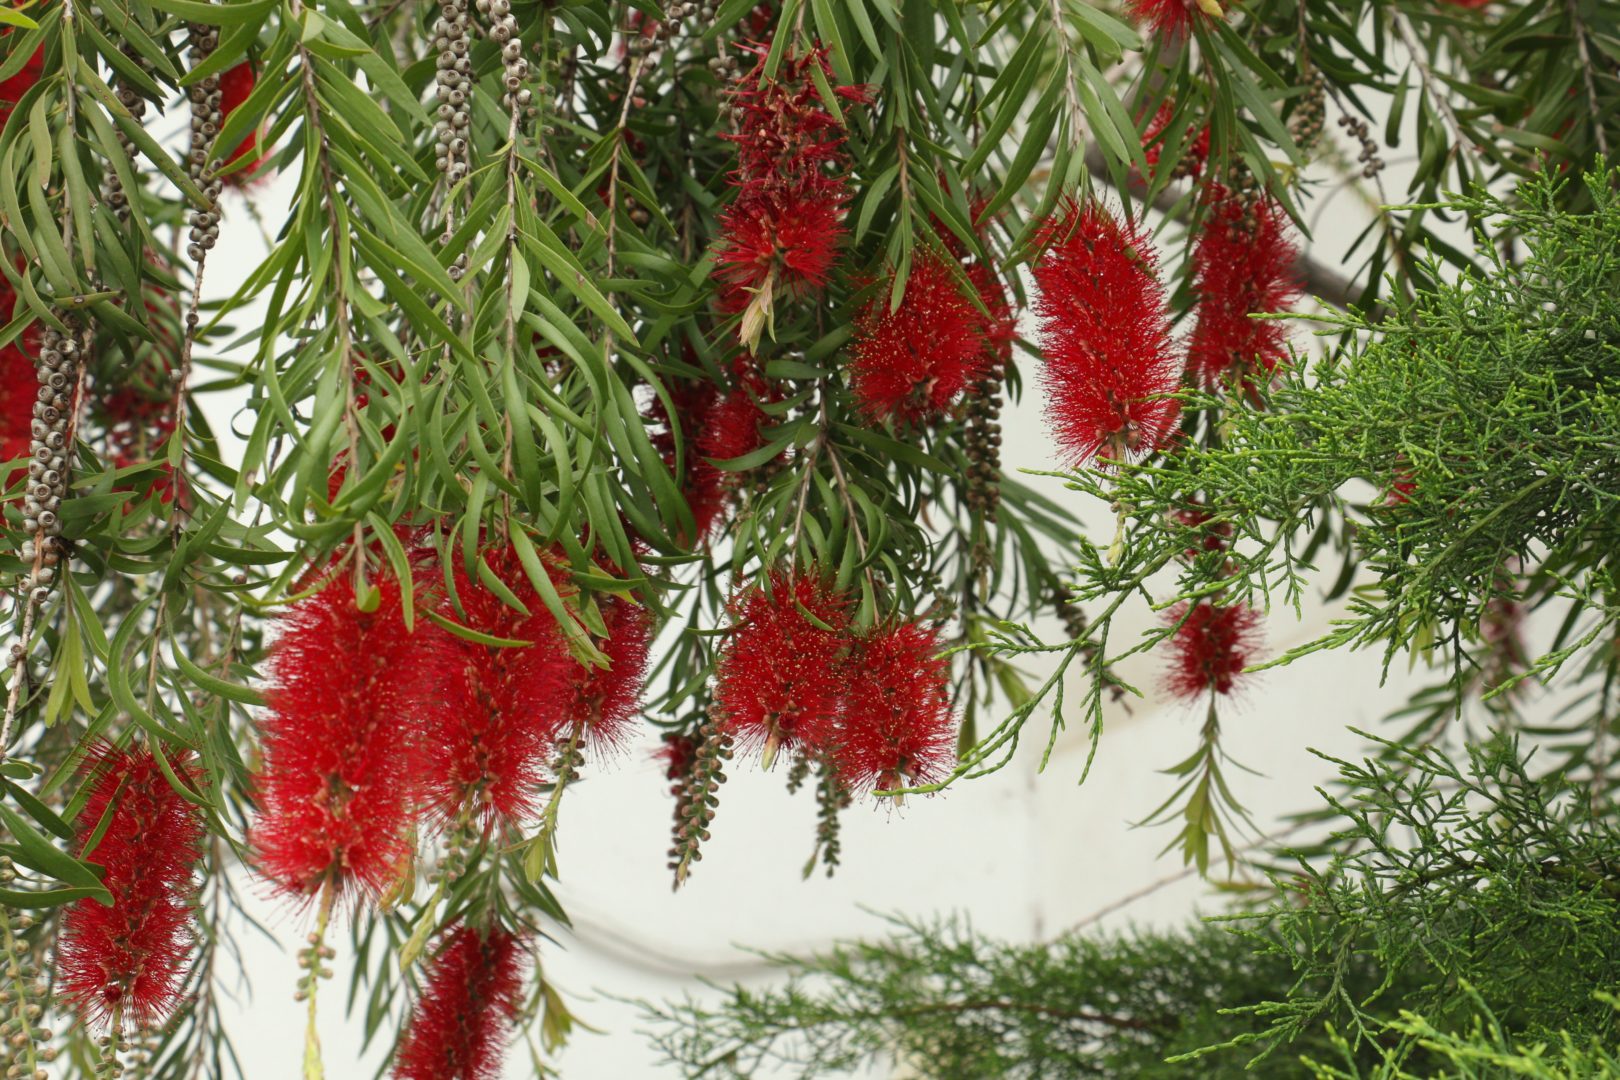 Растение с красными цветами-метелками - каллистемон